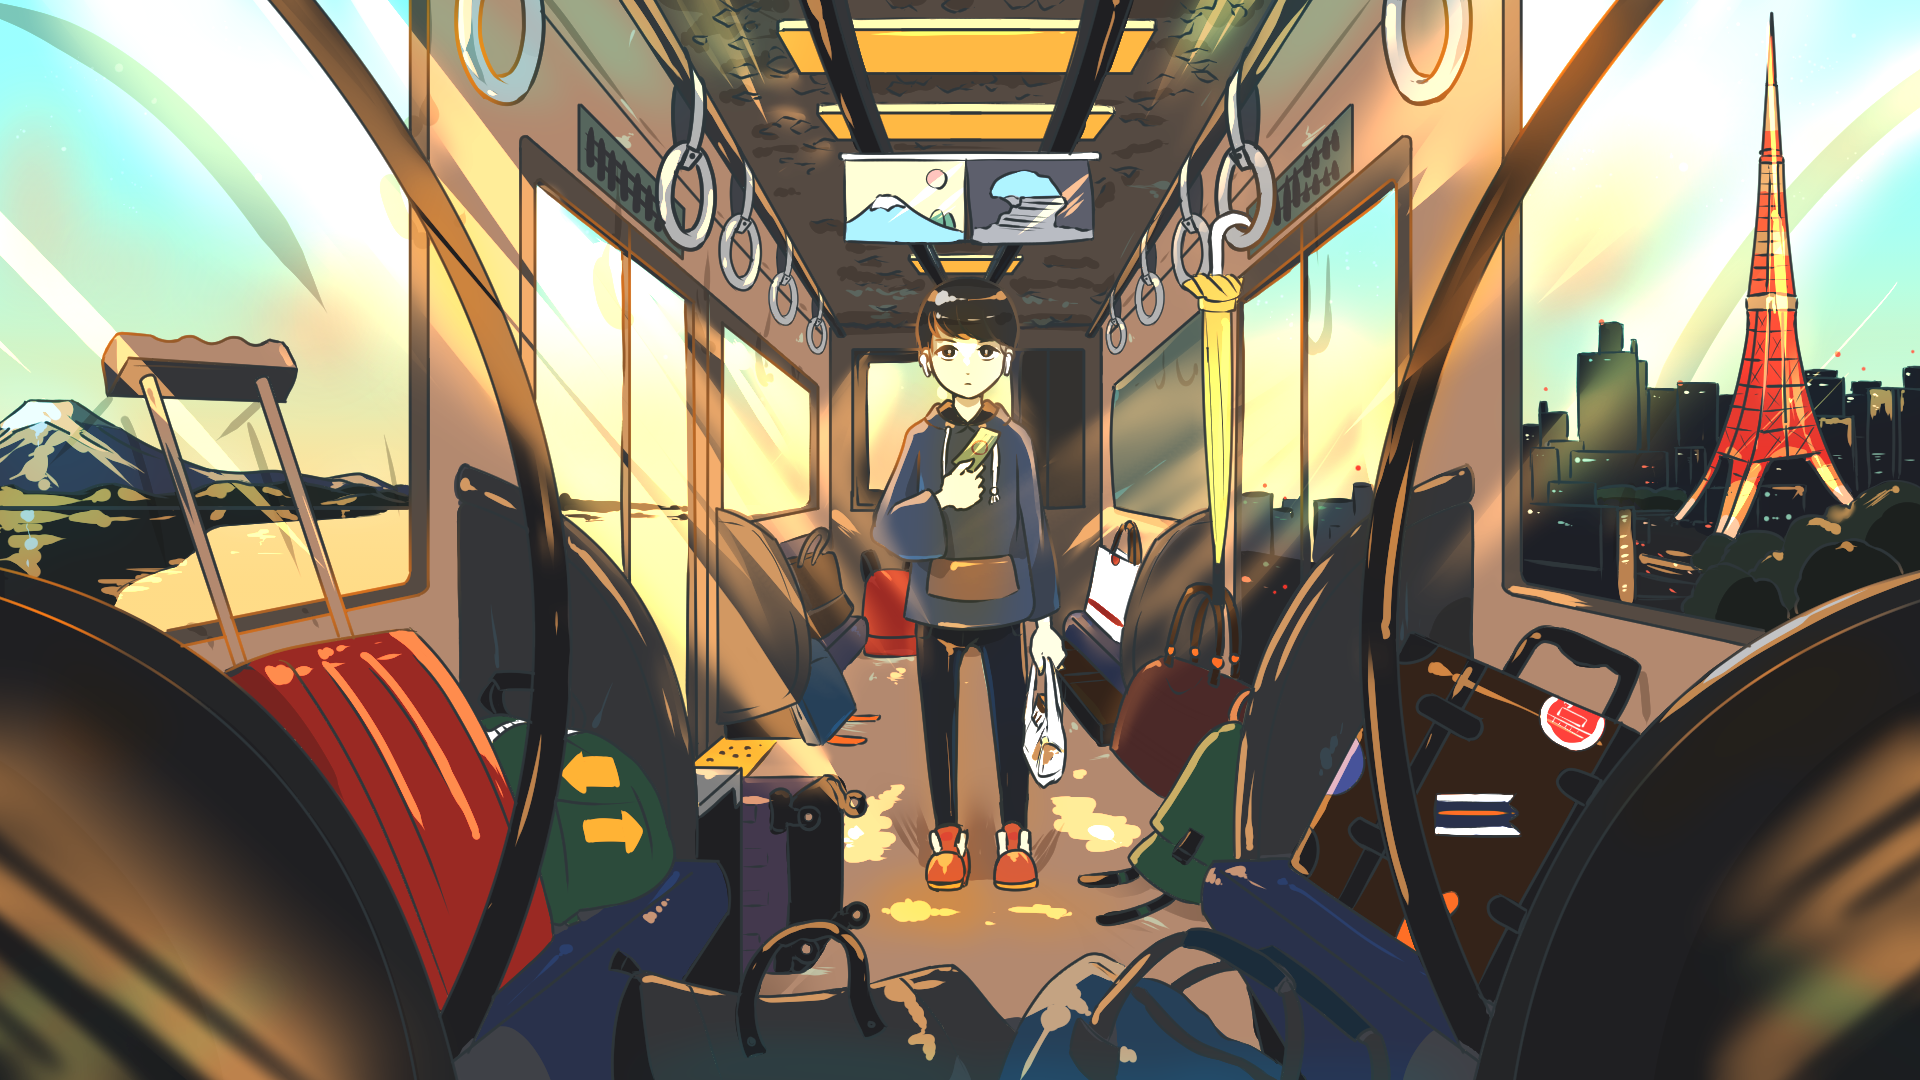 「出立-東京駅0520-」插画图片壁纸